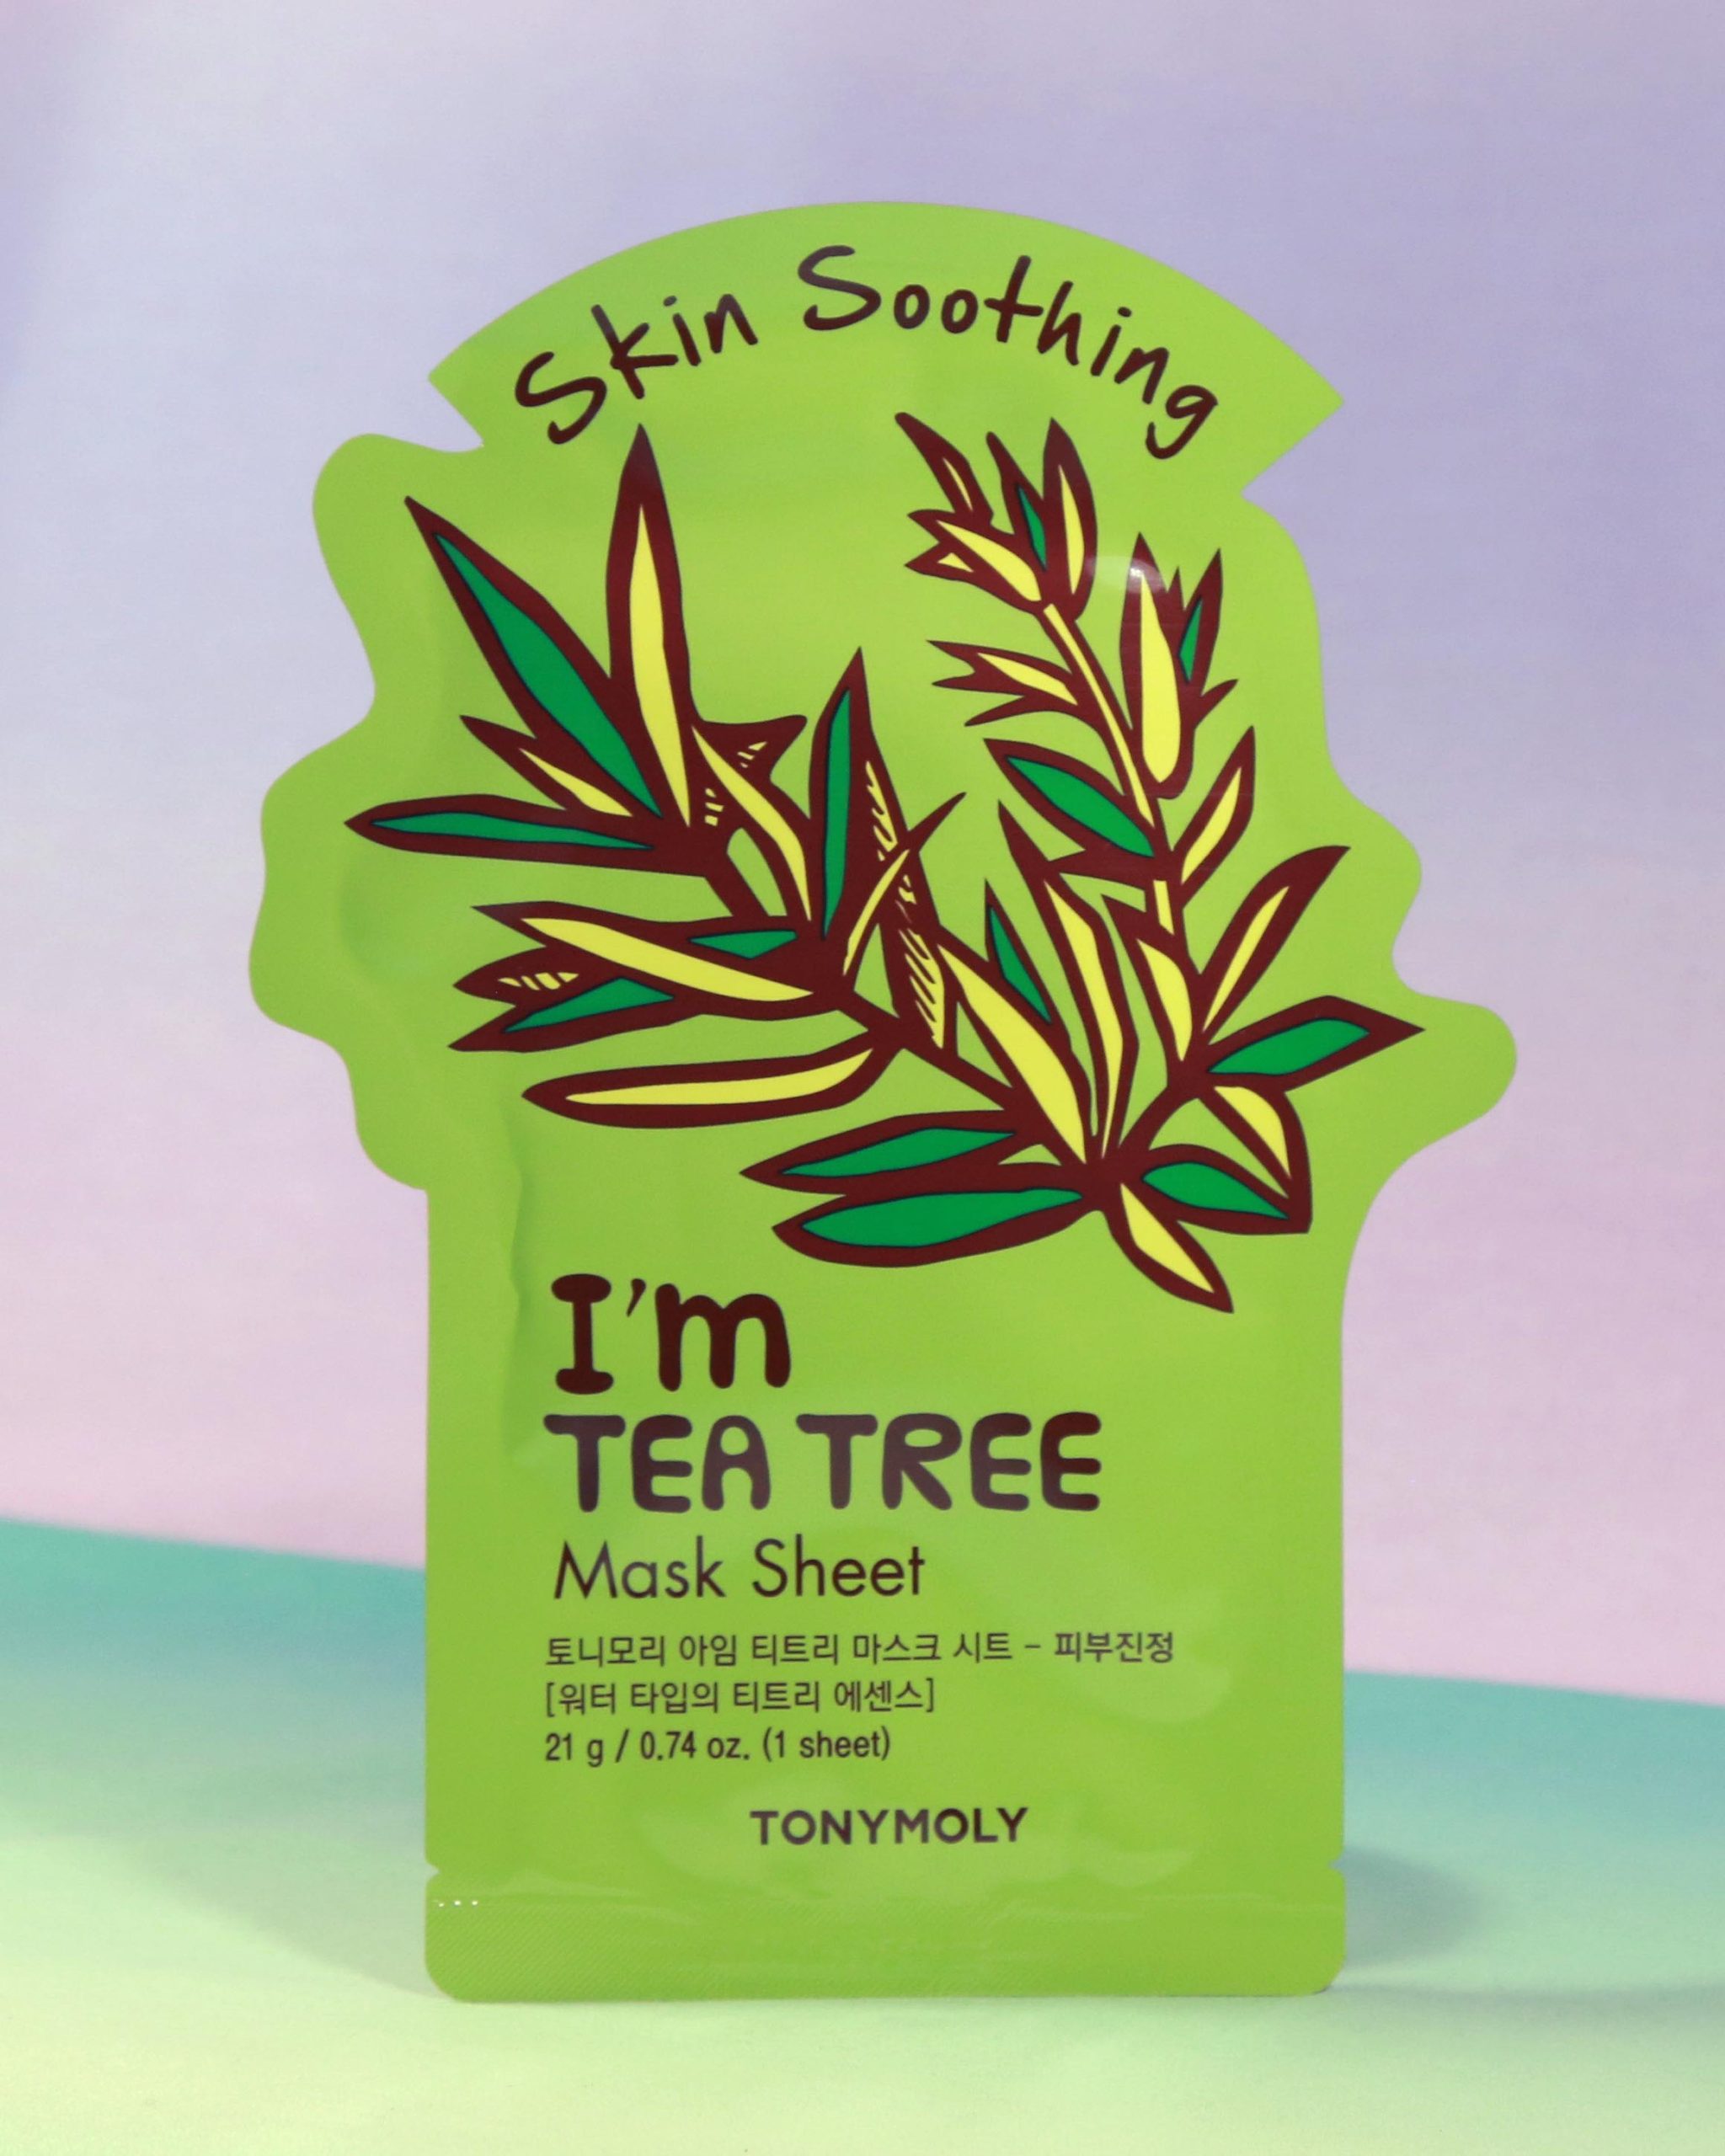 TONYMOLY I’M TEA TREE MASK SHEET SKIN SOOTHING Simple.mu